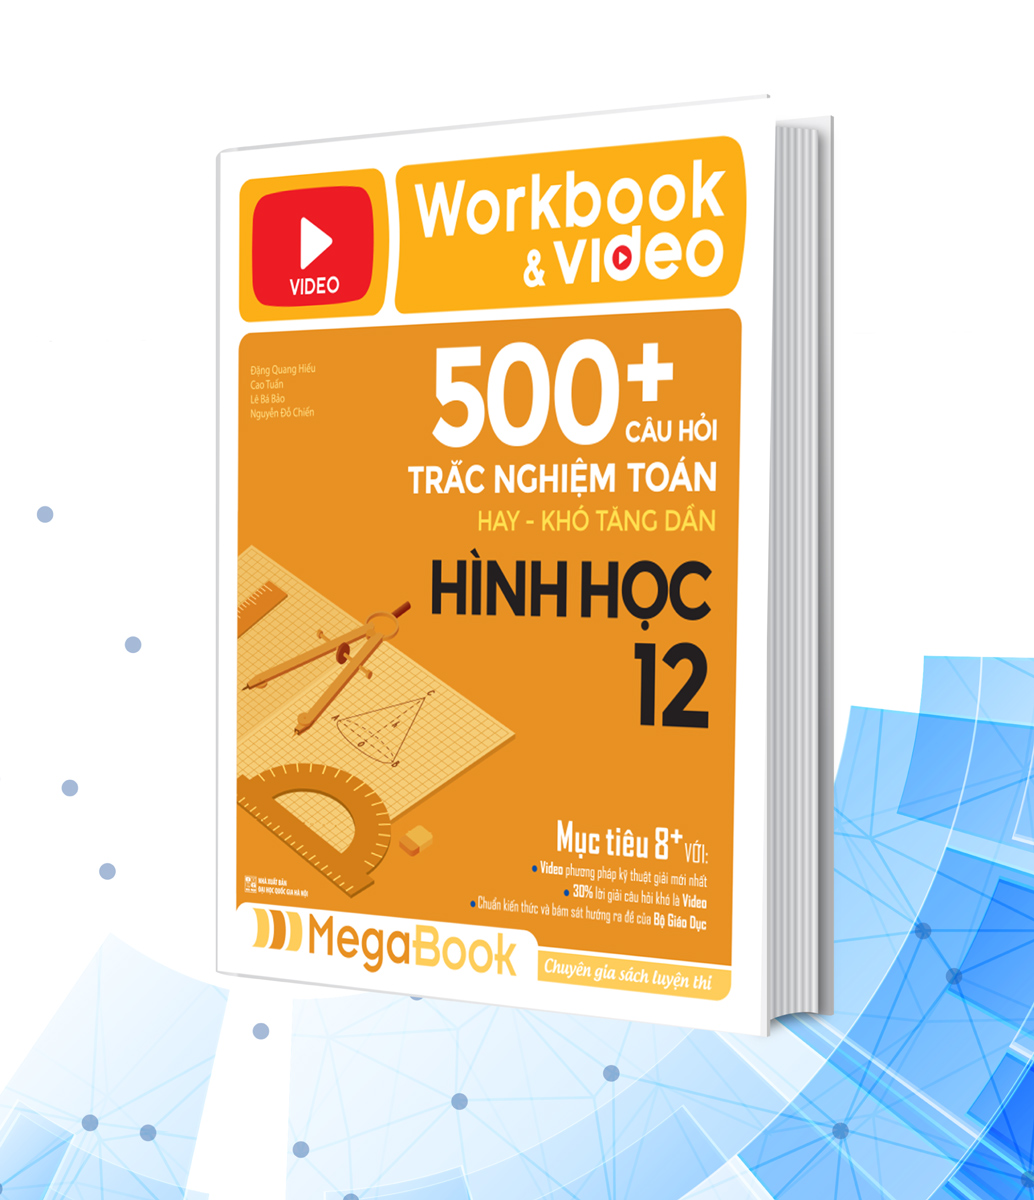 Workbook & Video 500+ Câu Hỏi Trắc Nghiệm Toán Hay - Khó Tăng Dần Hình Học 12